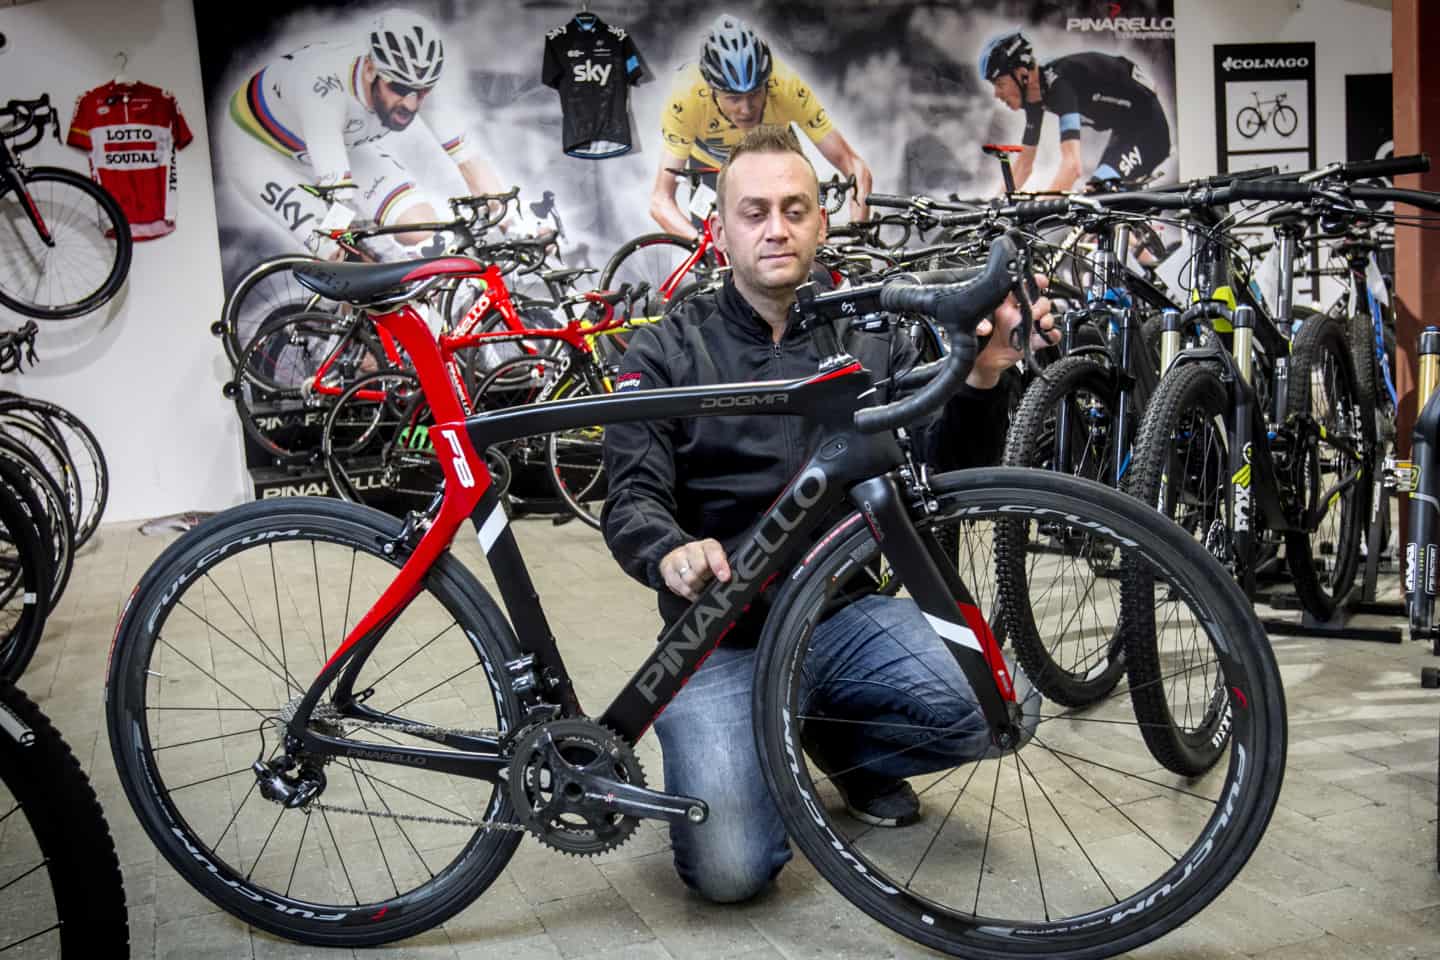 Cykelforretning billede af mand, der ikke cykel til 50.000 kroner tilbage: 'Måske han kommet noget til' | jv.dk